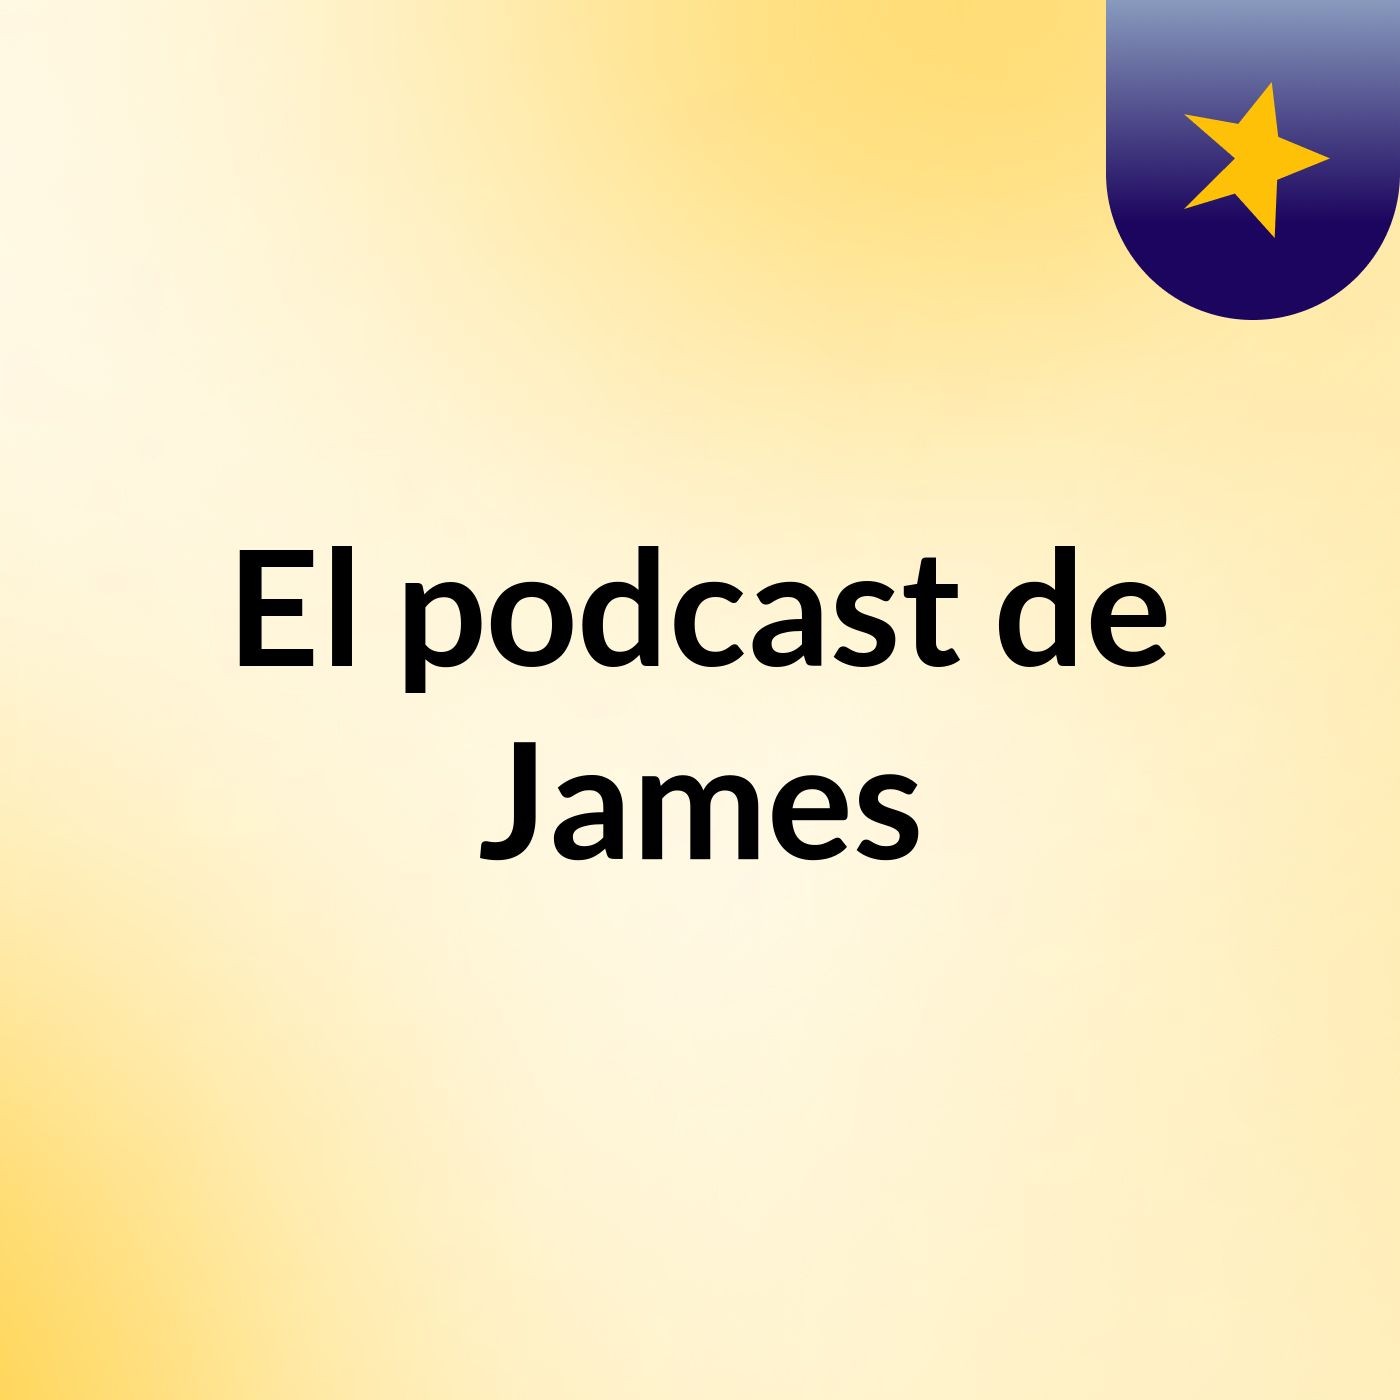 El podcast de James